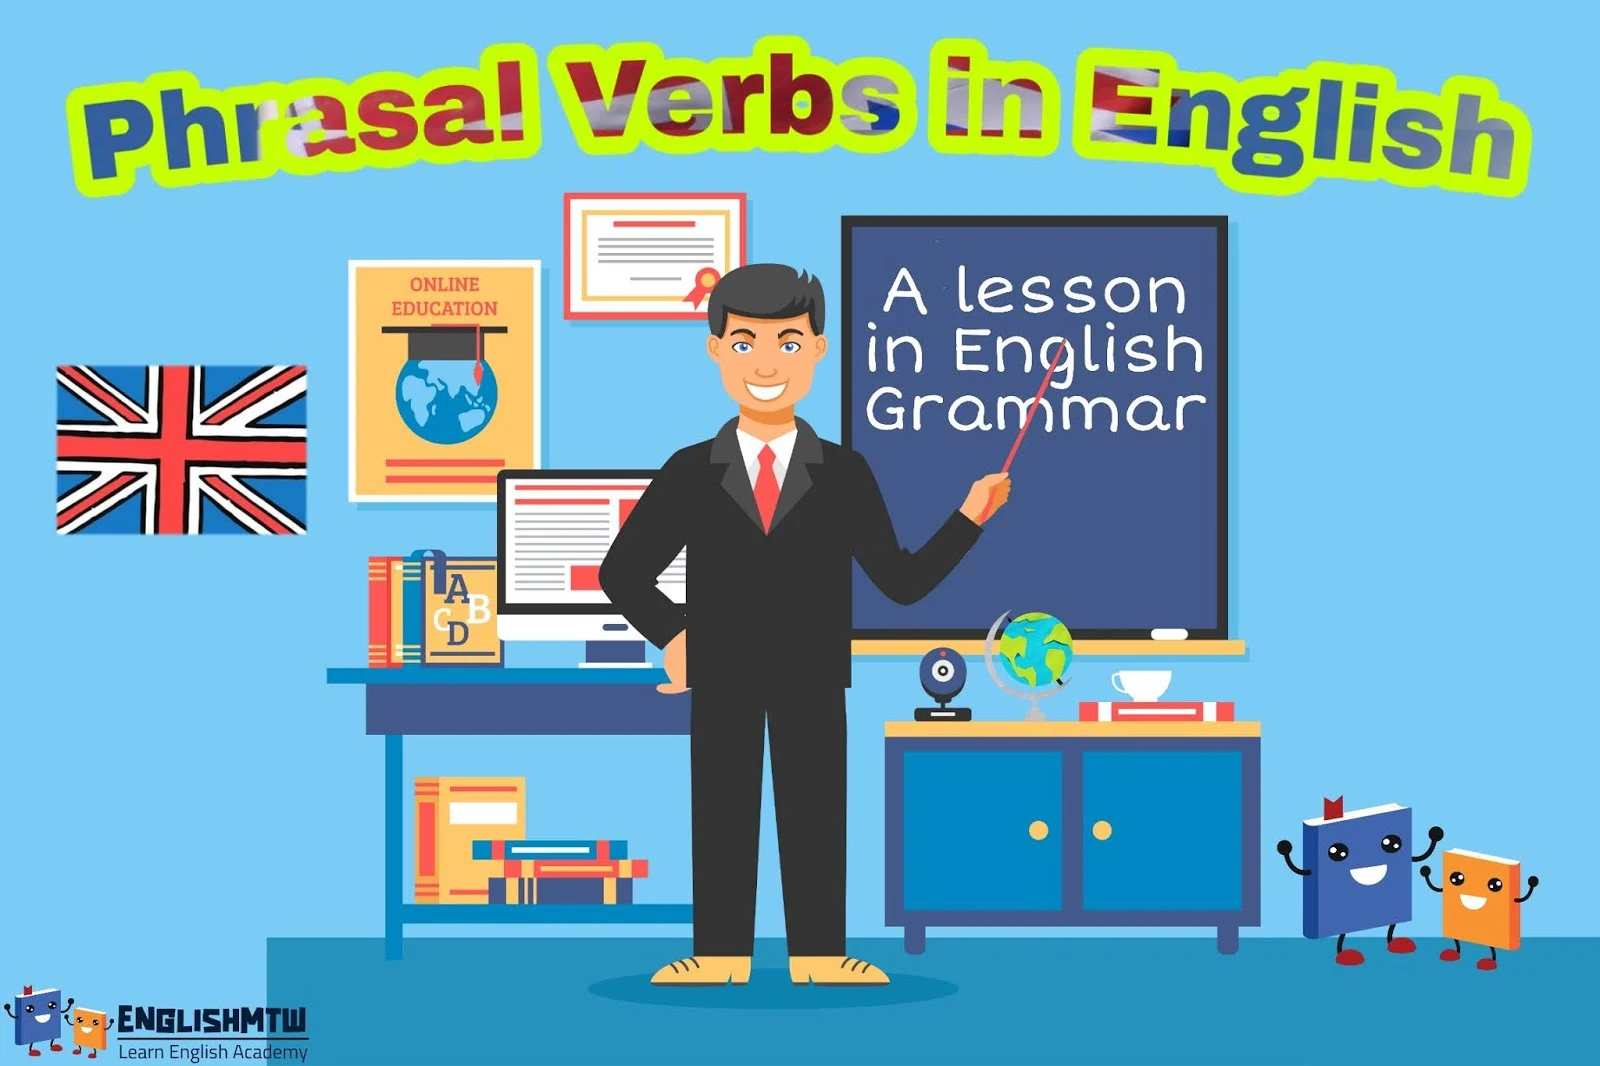 شرح جميع الأفعال المركبة Phrasal verbs في اللغة الانجليزية